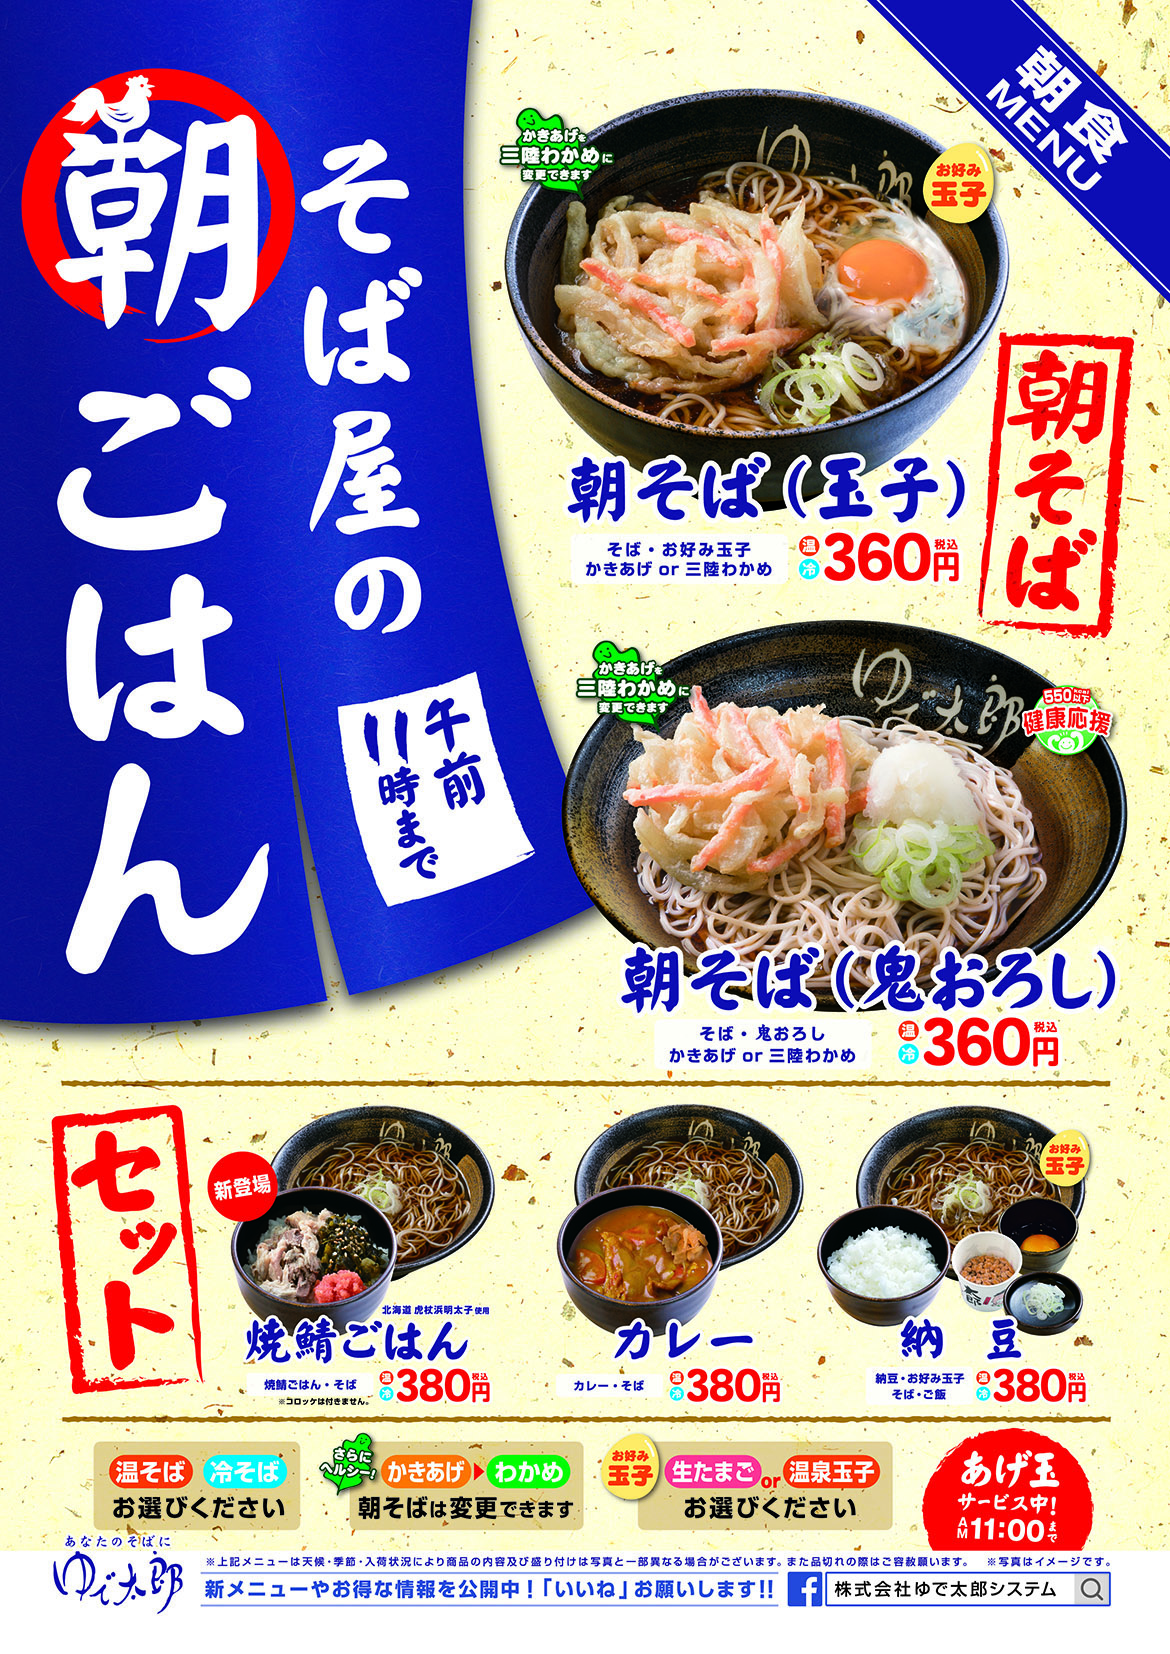 秋田市 自家製麺のそばが1杯340円から 江戸切りそばの店 ゆで太郎 が3月オープン